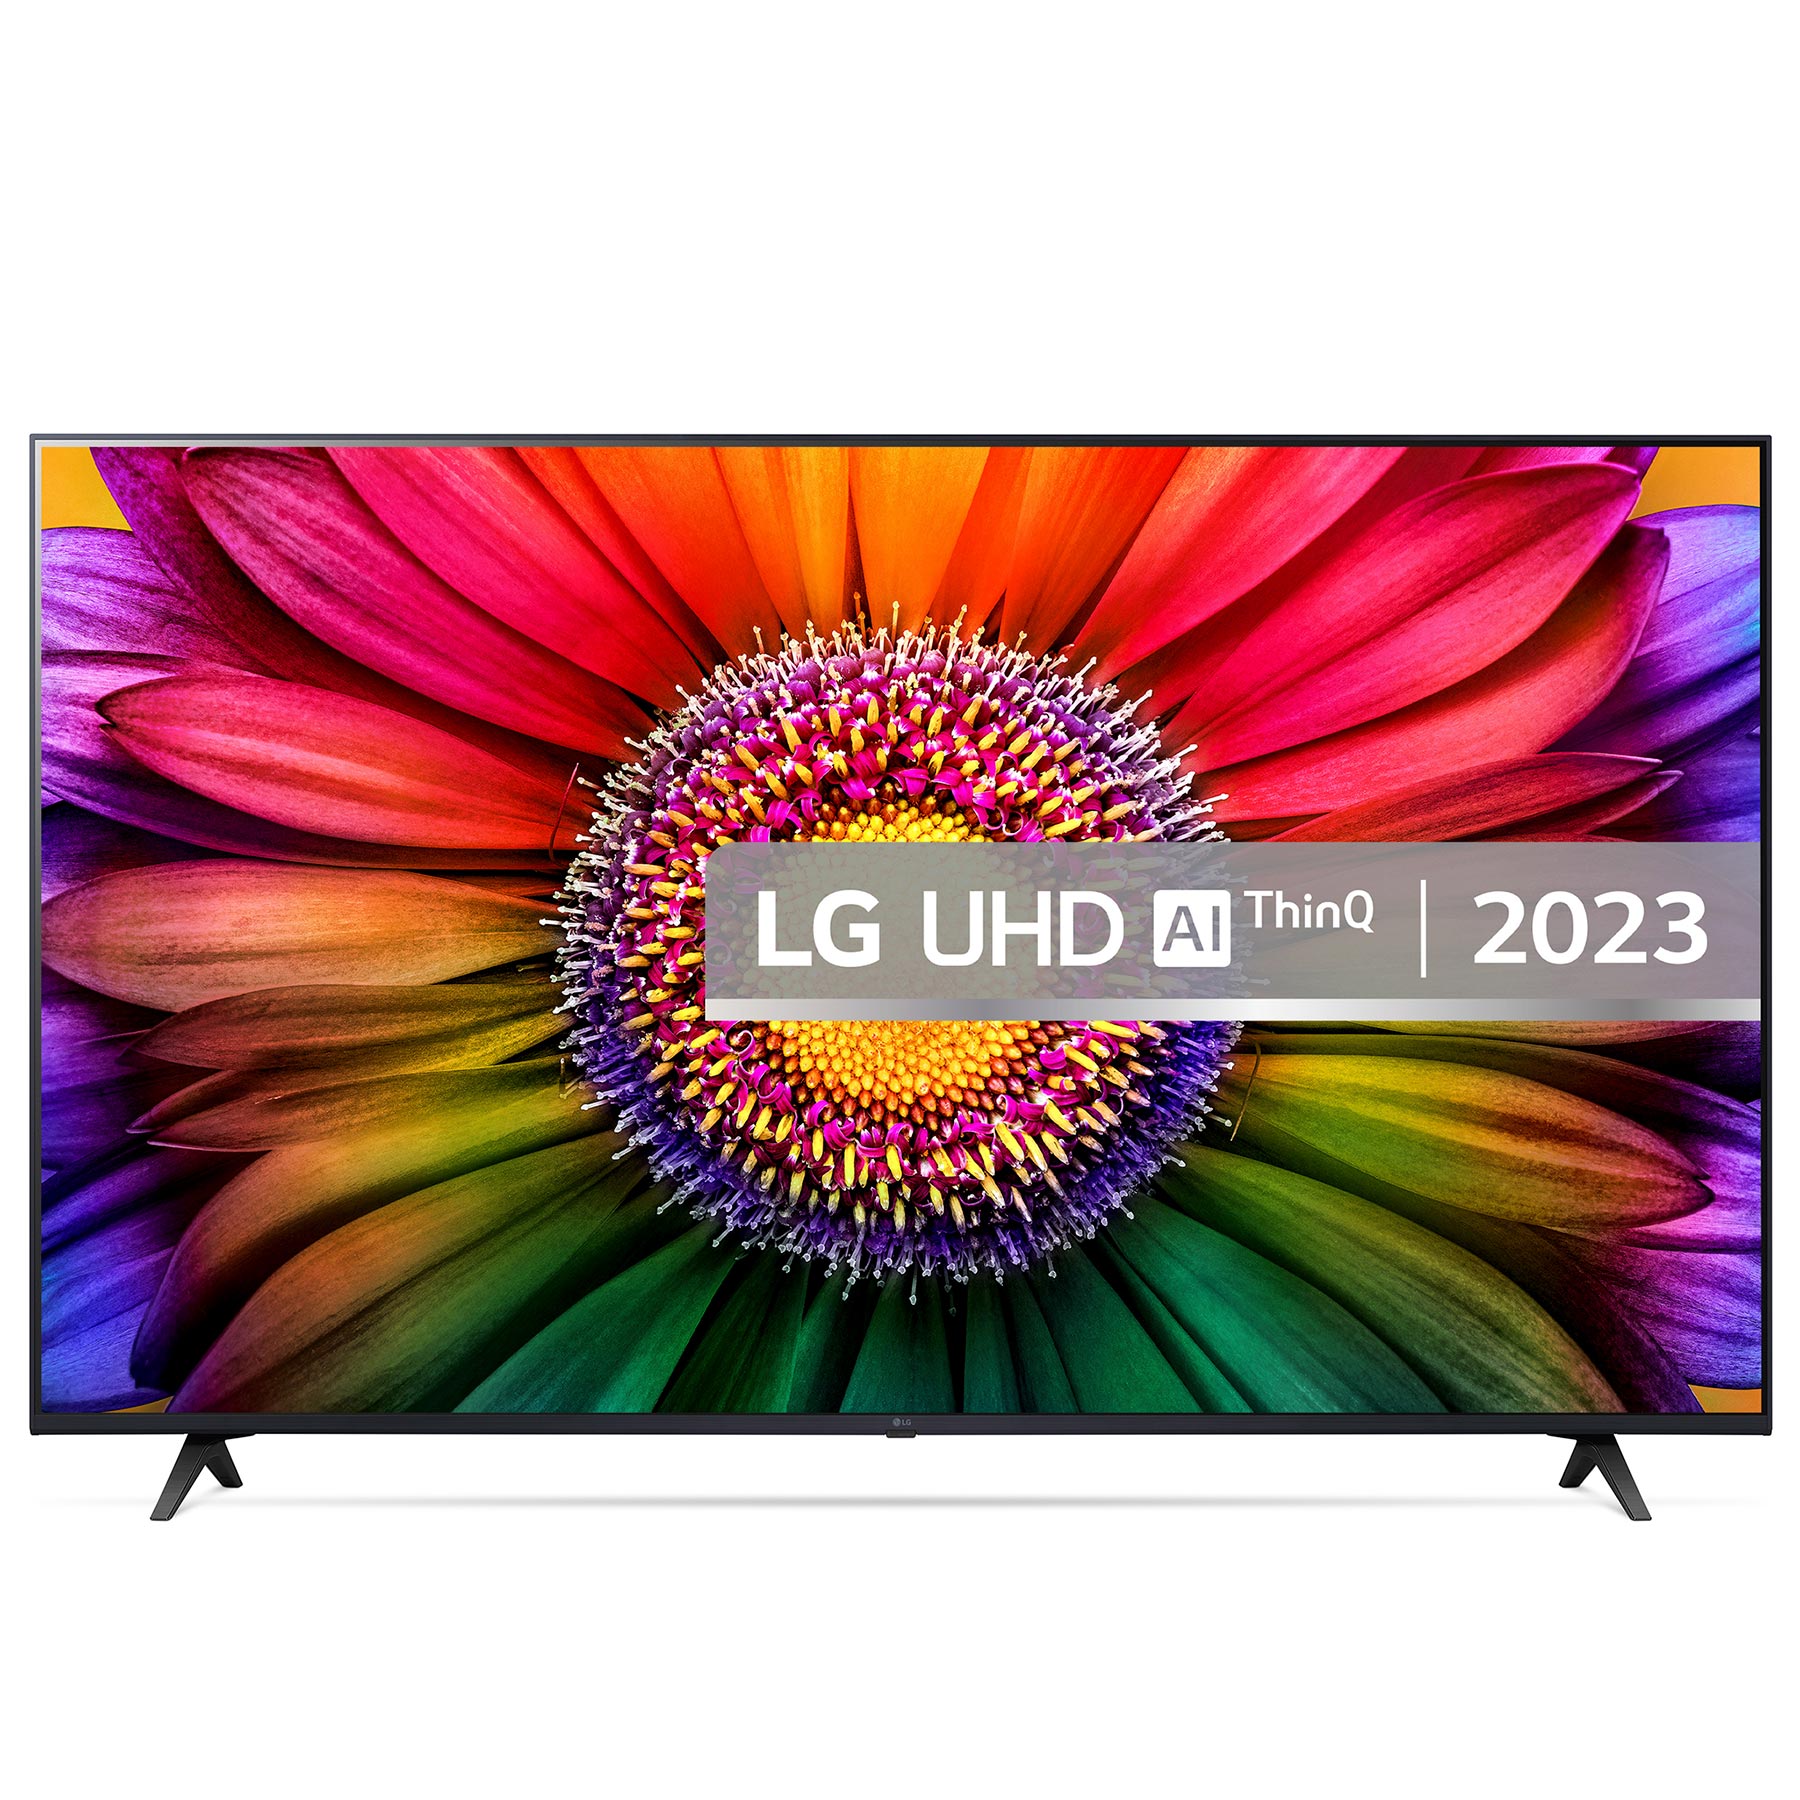 LG 55UR80006LJ 55 4K HDR UHD Smart LED TV HDR10 HLG AI Sound Pro